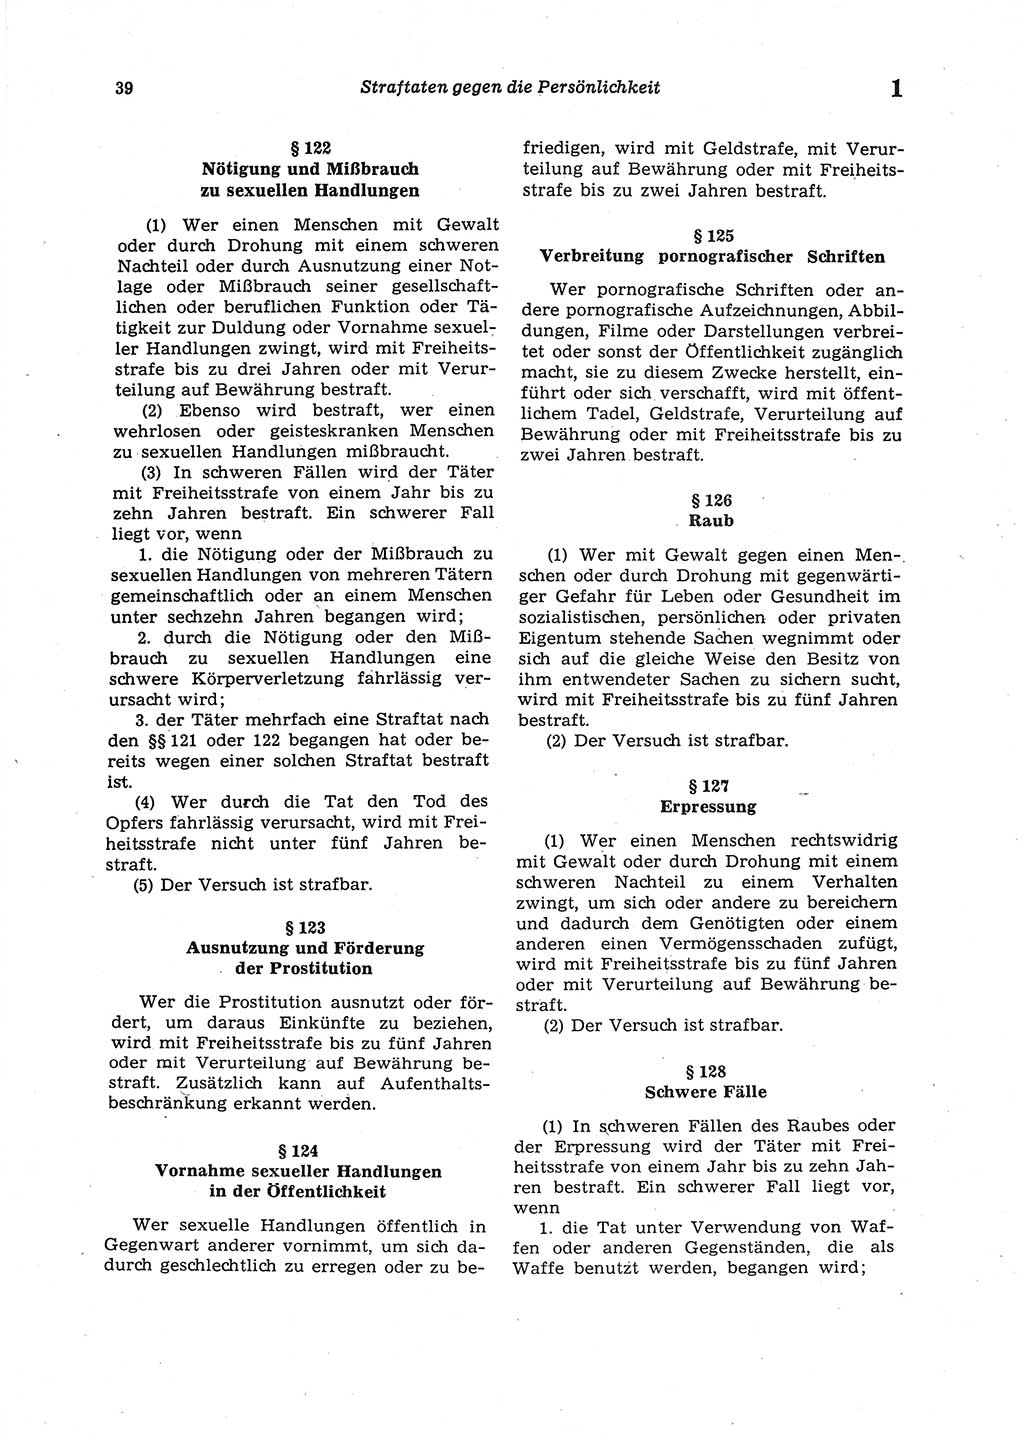 Strafgesetzbuch (StGB) der Deutschen Demokratischen Republik (DDR) 1987, Seite 39 (StGB DDR 1987, S. 39)